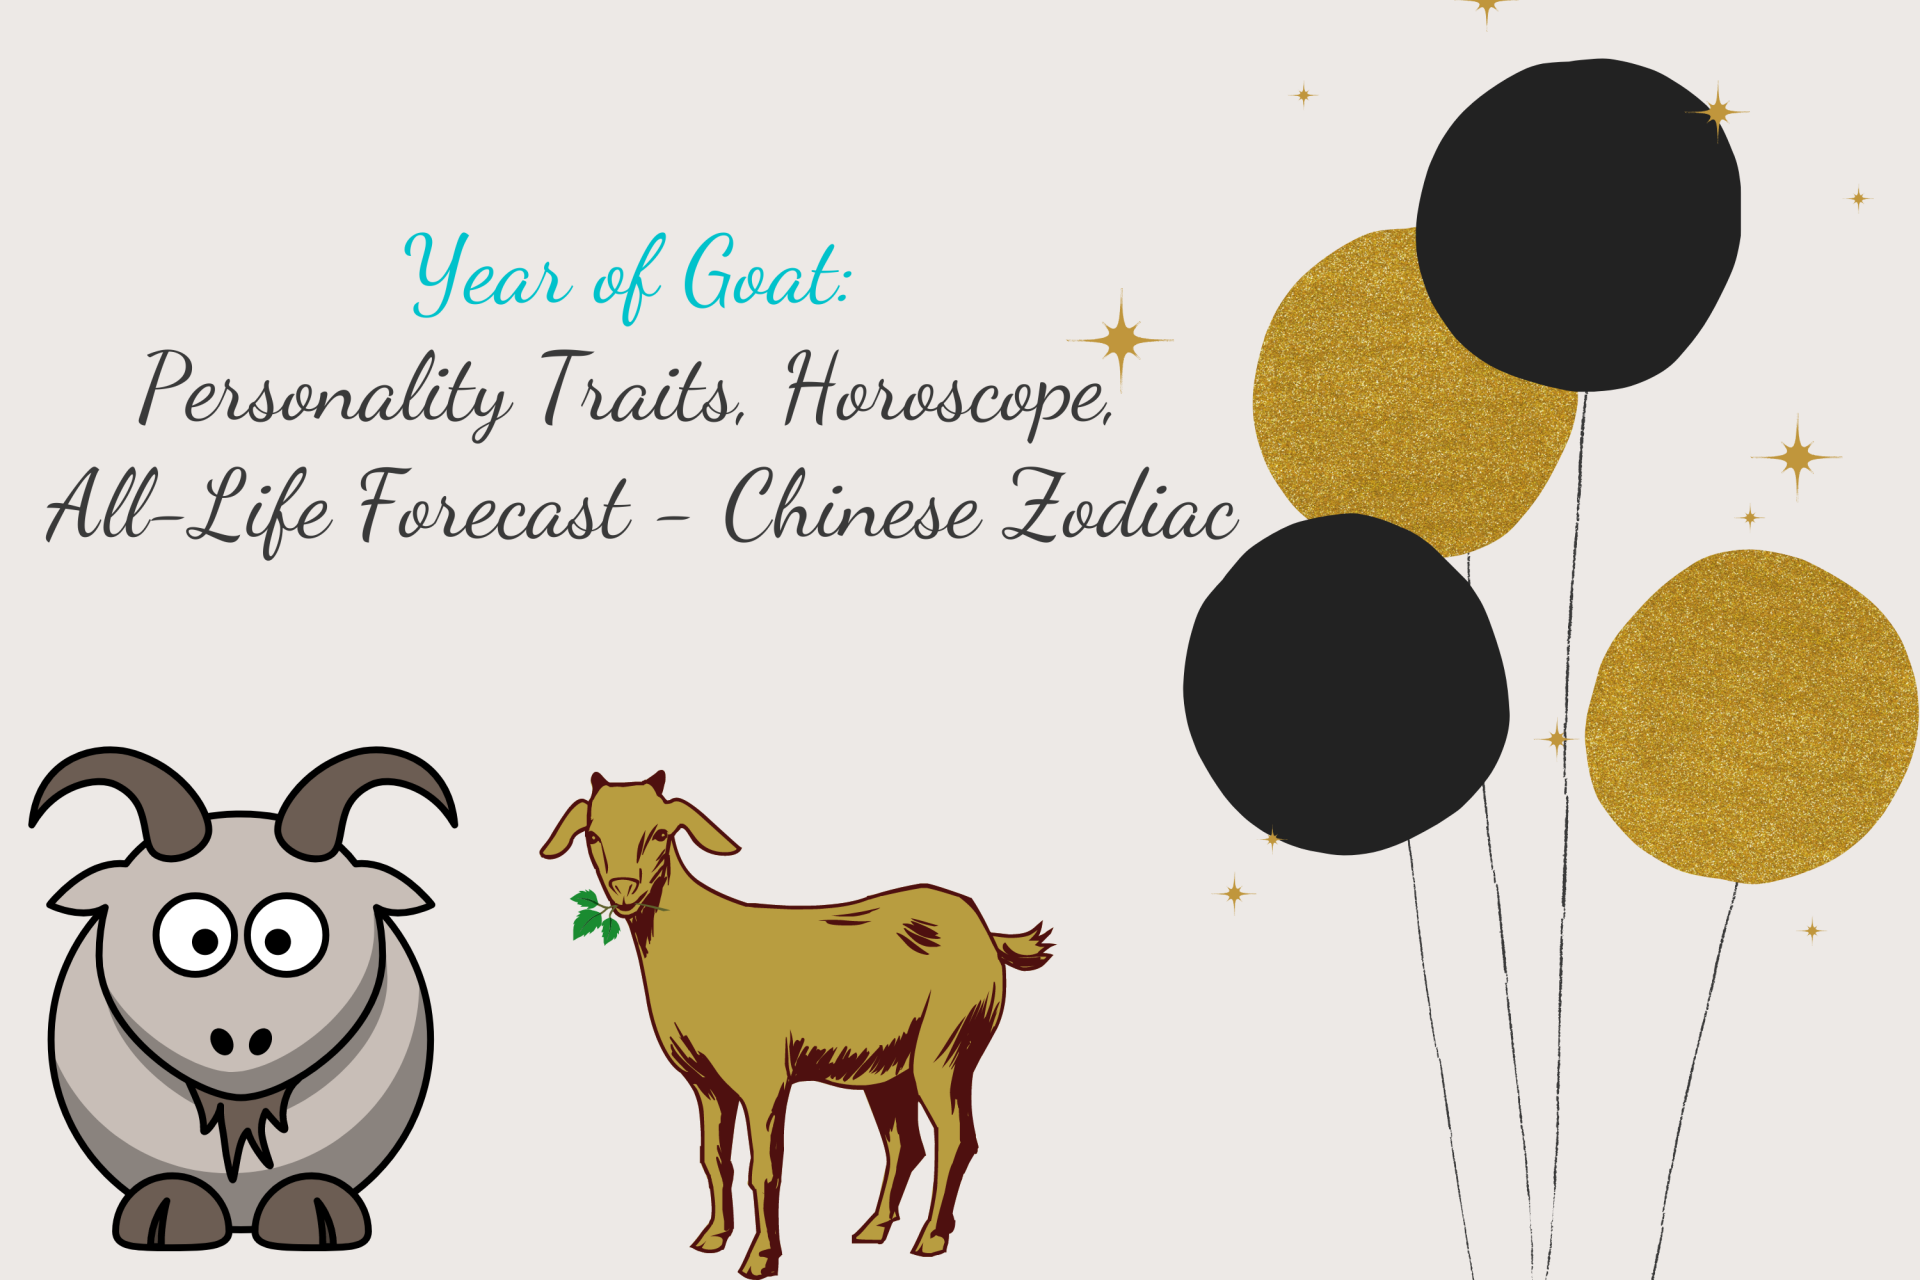 Year of Goat: Personality Traits, Horoscope, Forecast - Chinese Zodiac